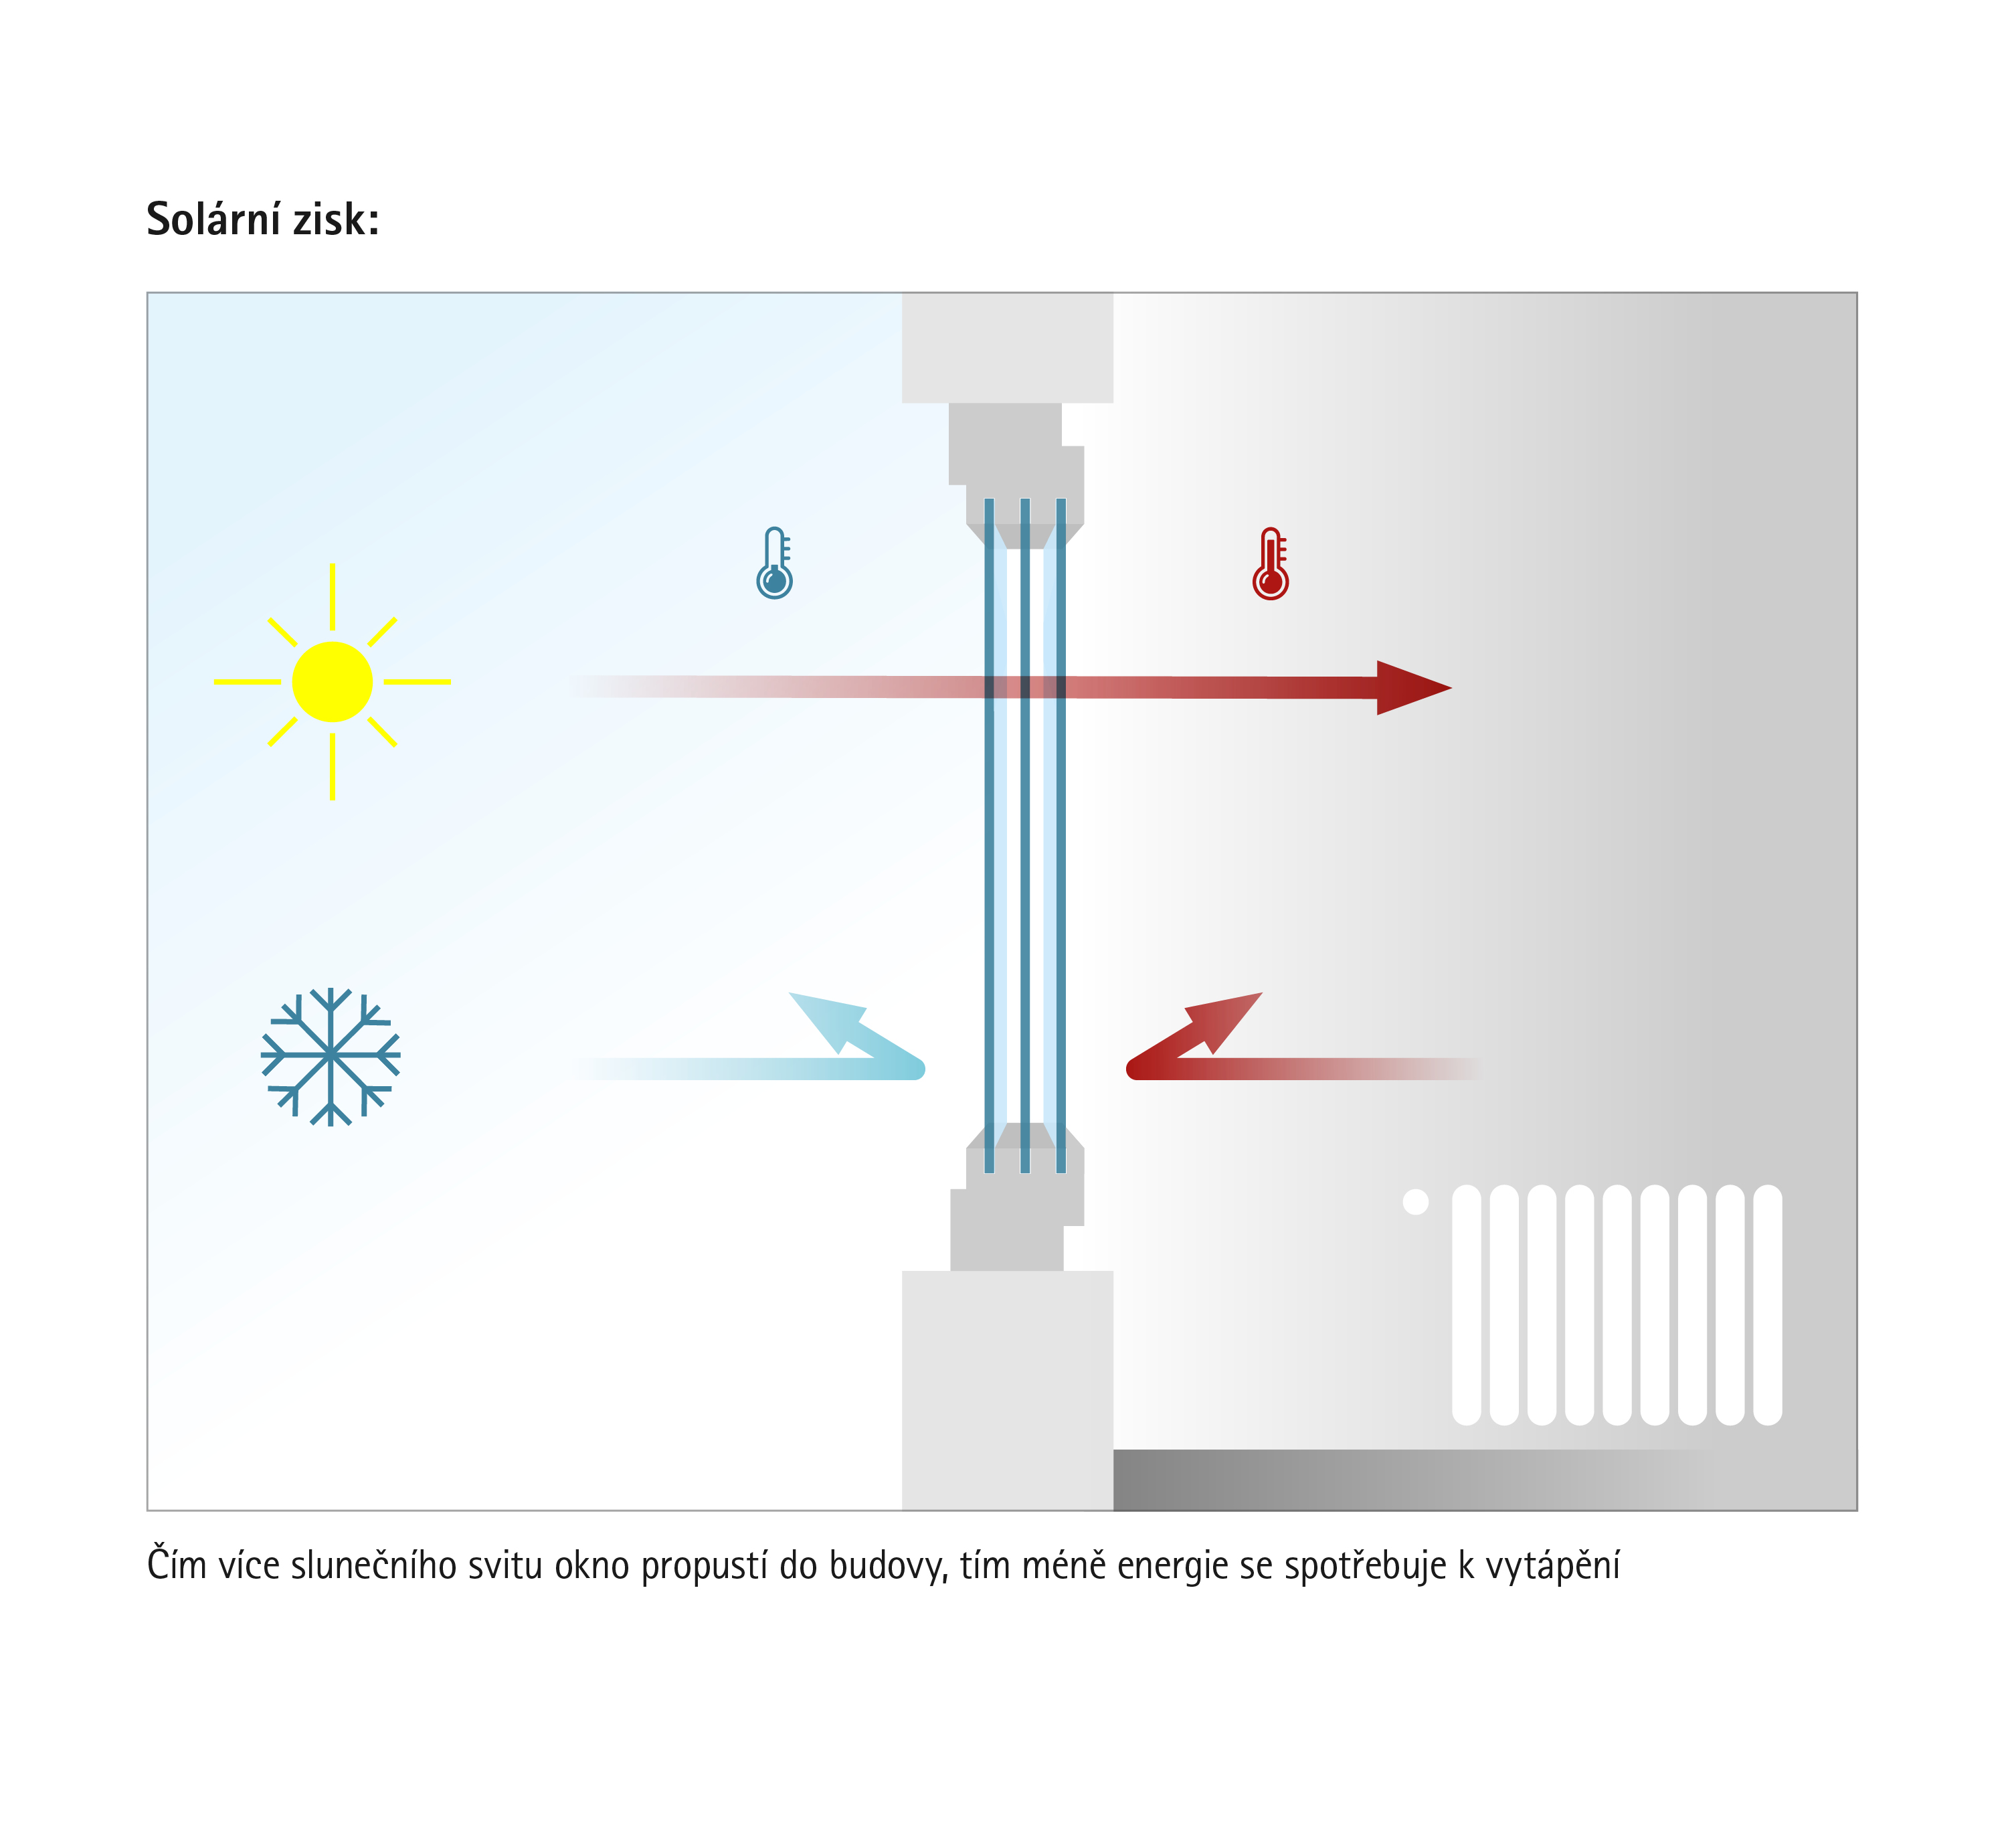 Zisky solární energie: Účinné okenní prvky propouštějí do domu sluneční záření a snižují ztráty tepelné energie.